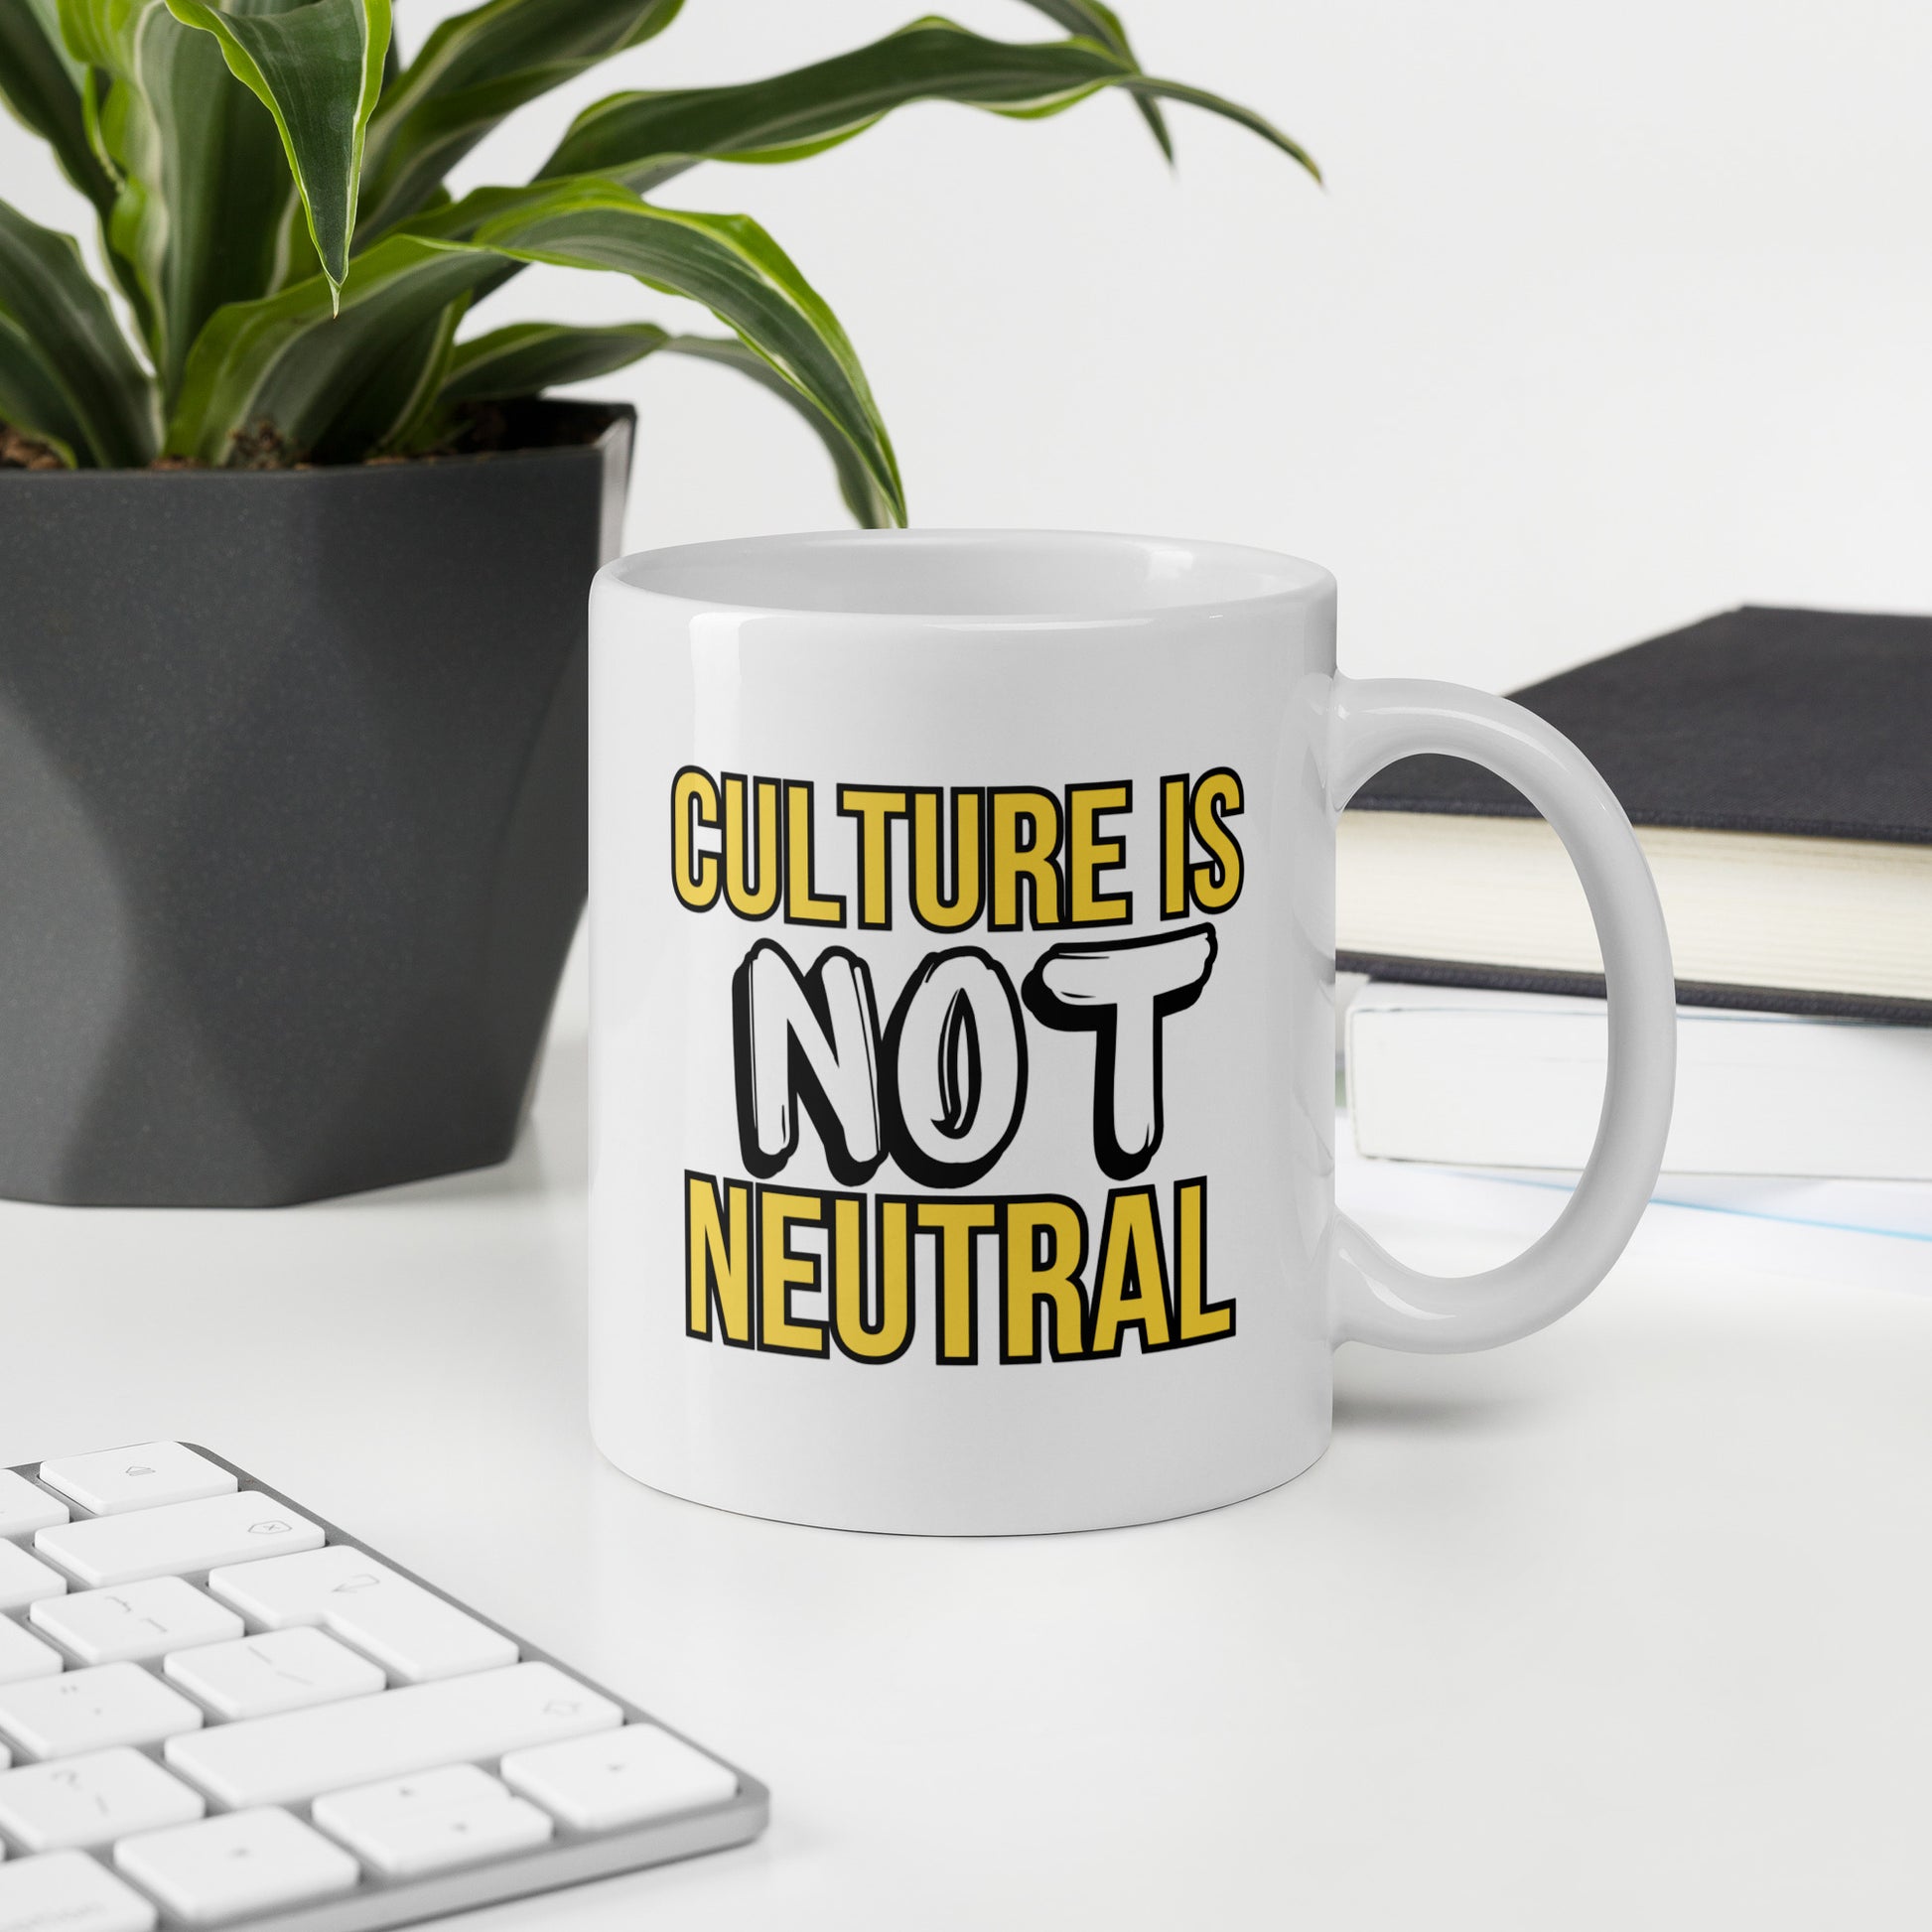 Not Neutral Mugs